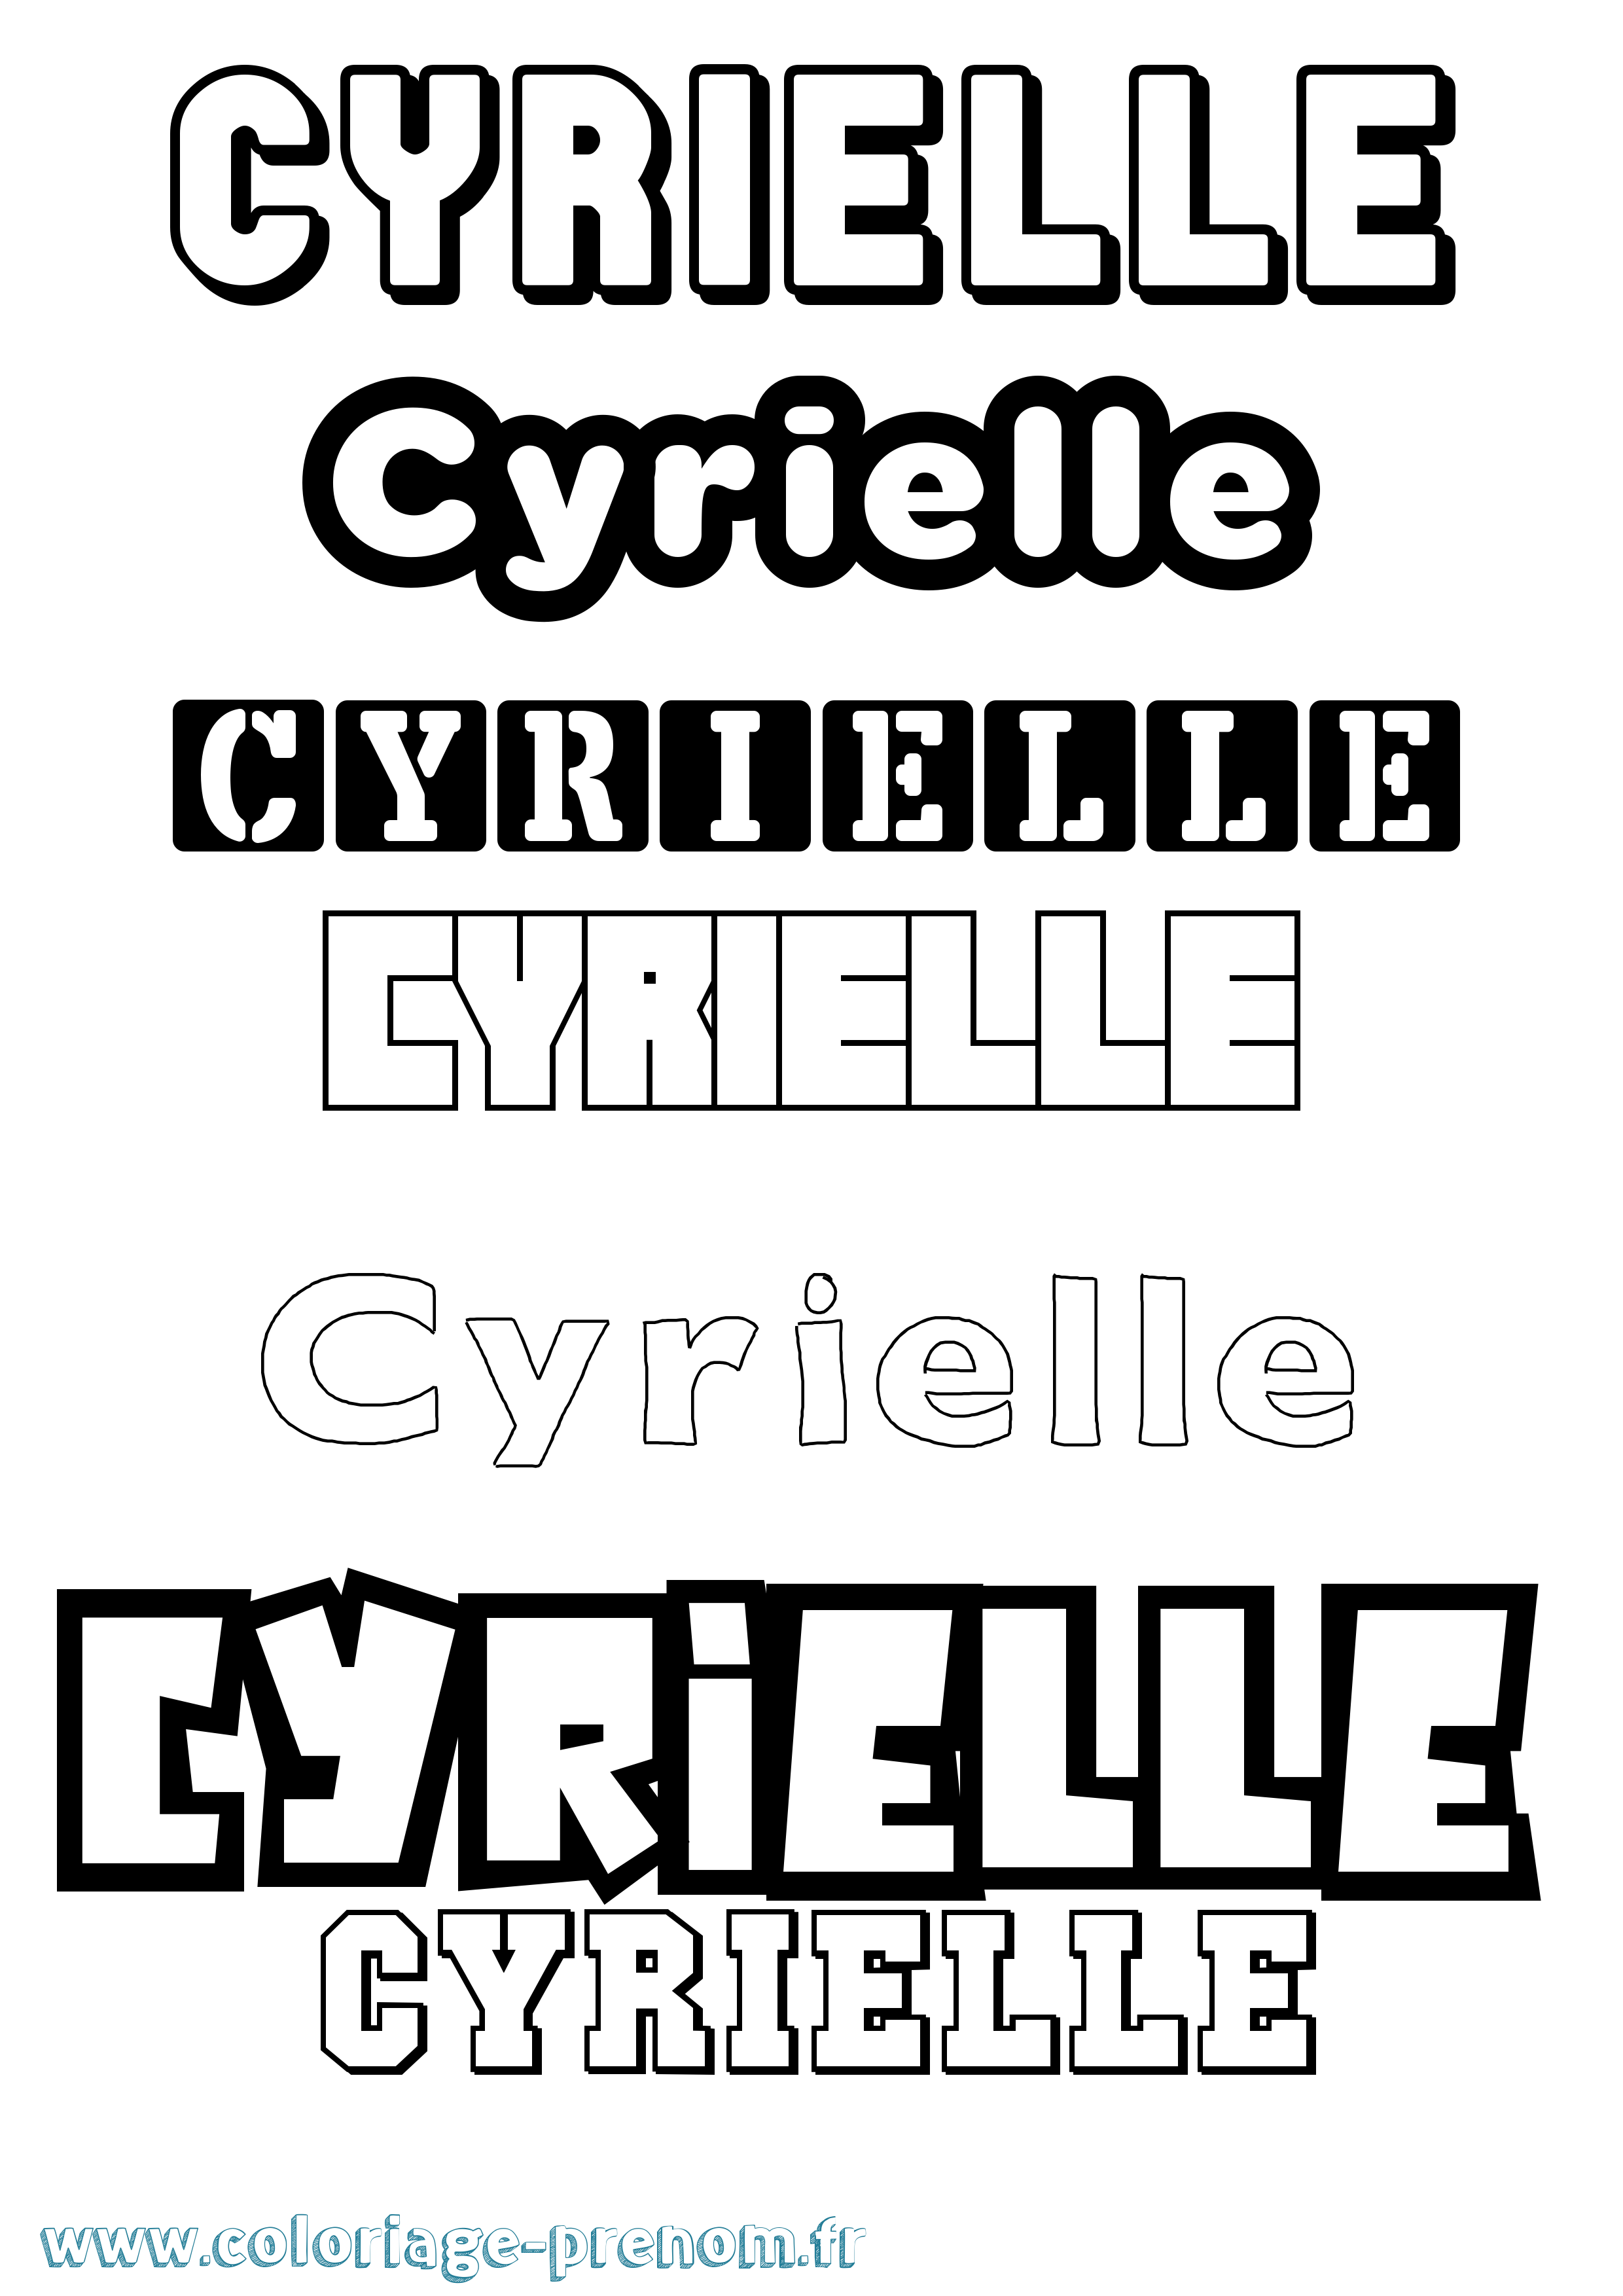 Coloriage prénom Cyrielle